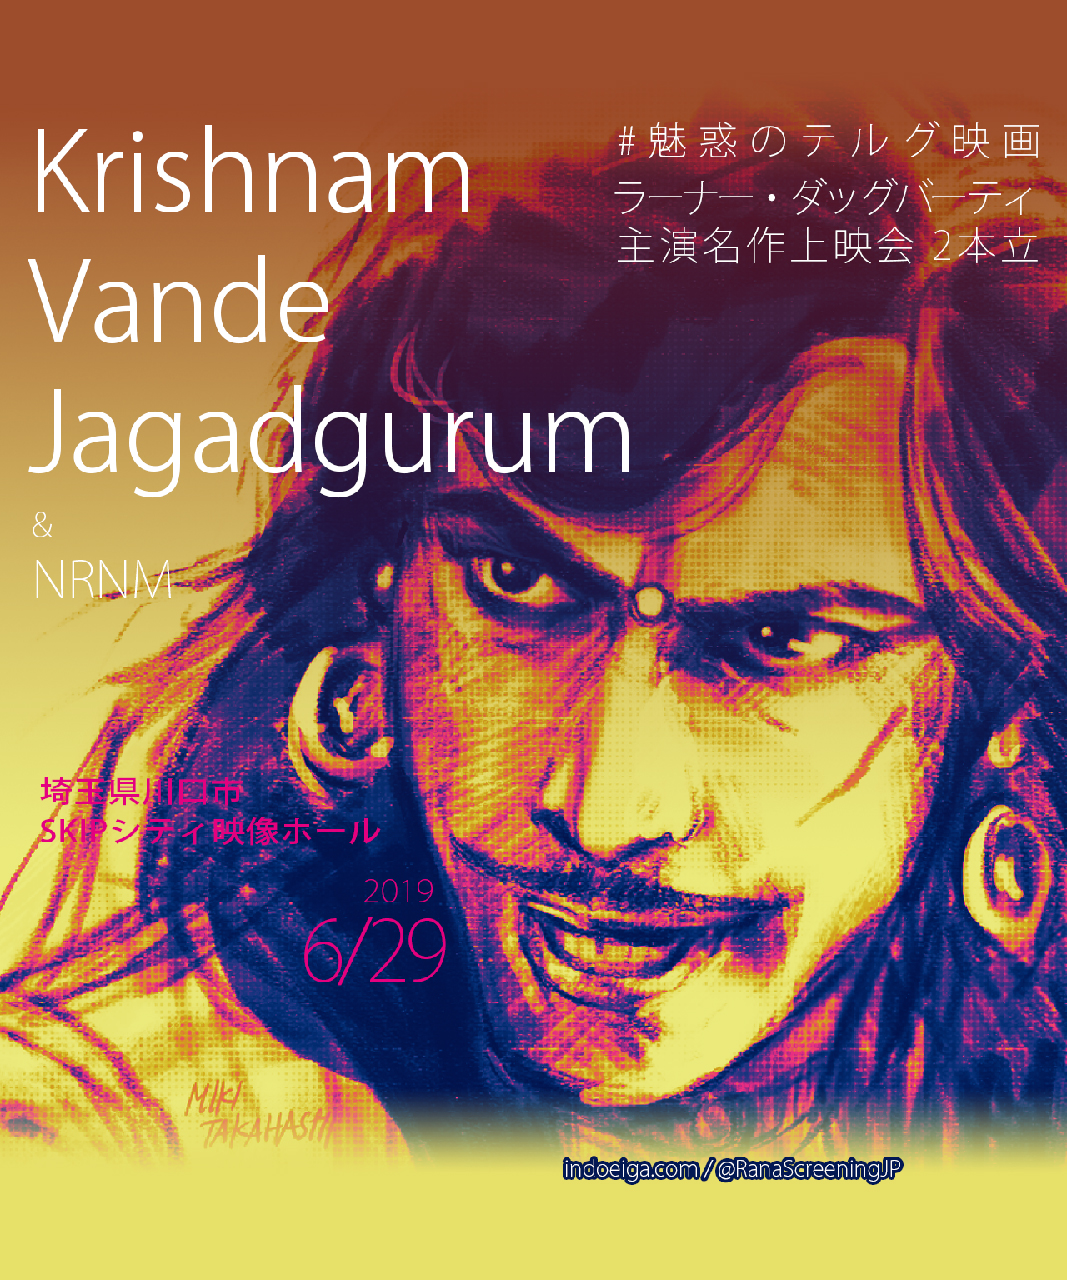 映画 Krishnam Vande Jagadgurum　2019年6月29日上映会開催されます